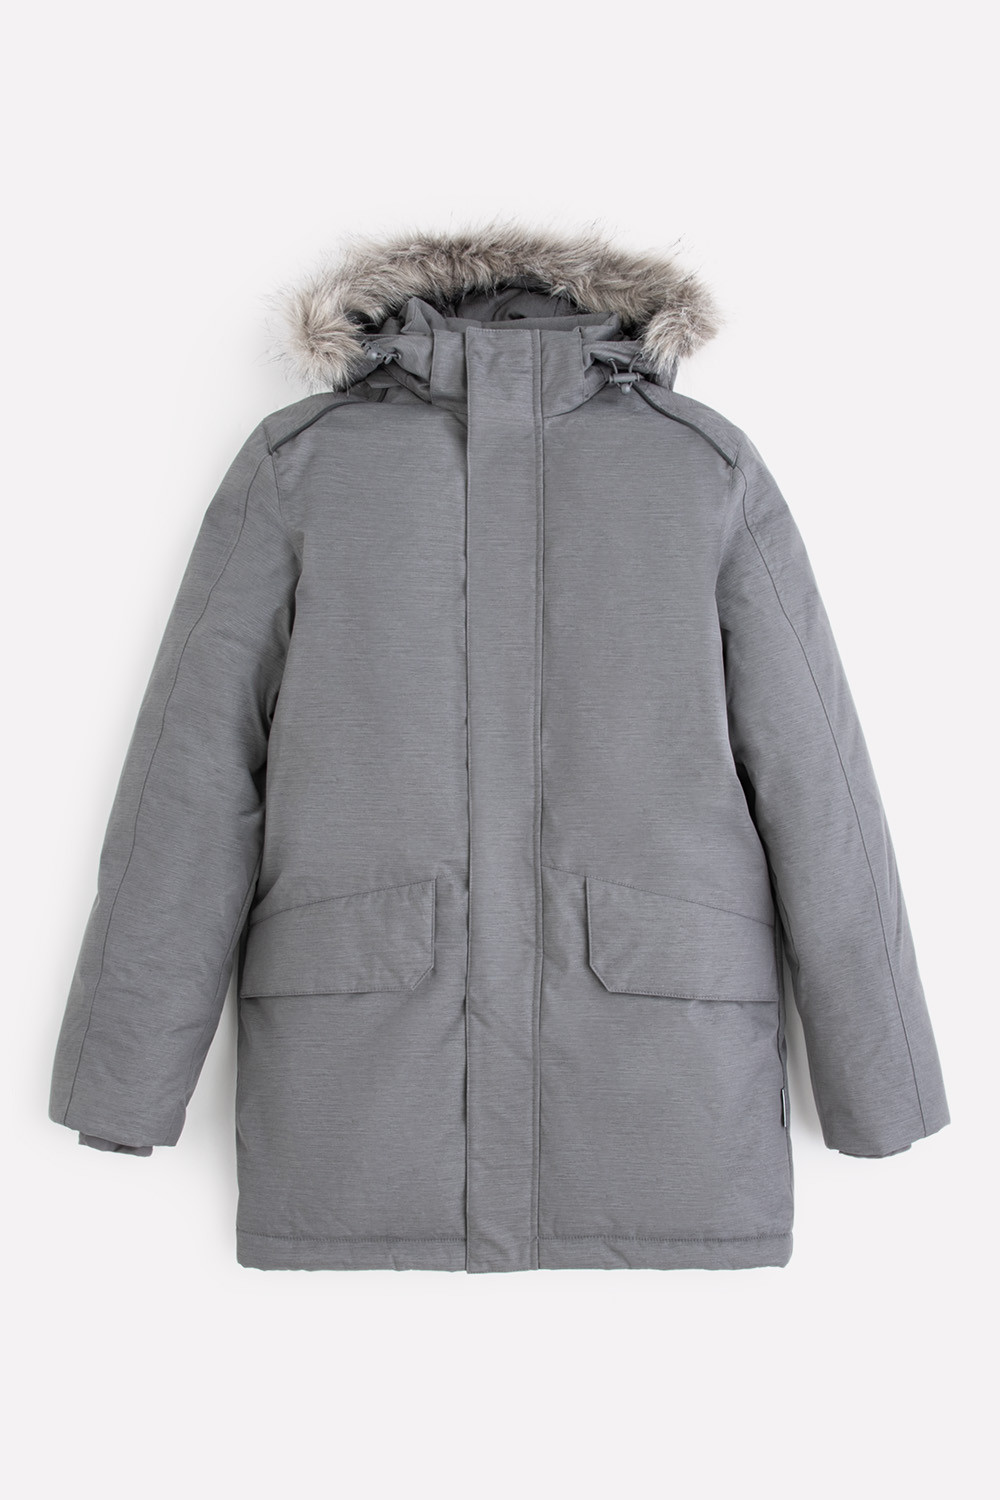 36067/2 ВКБ ГР Куртка для мальчика зима детская купить